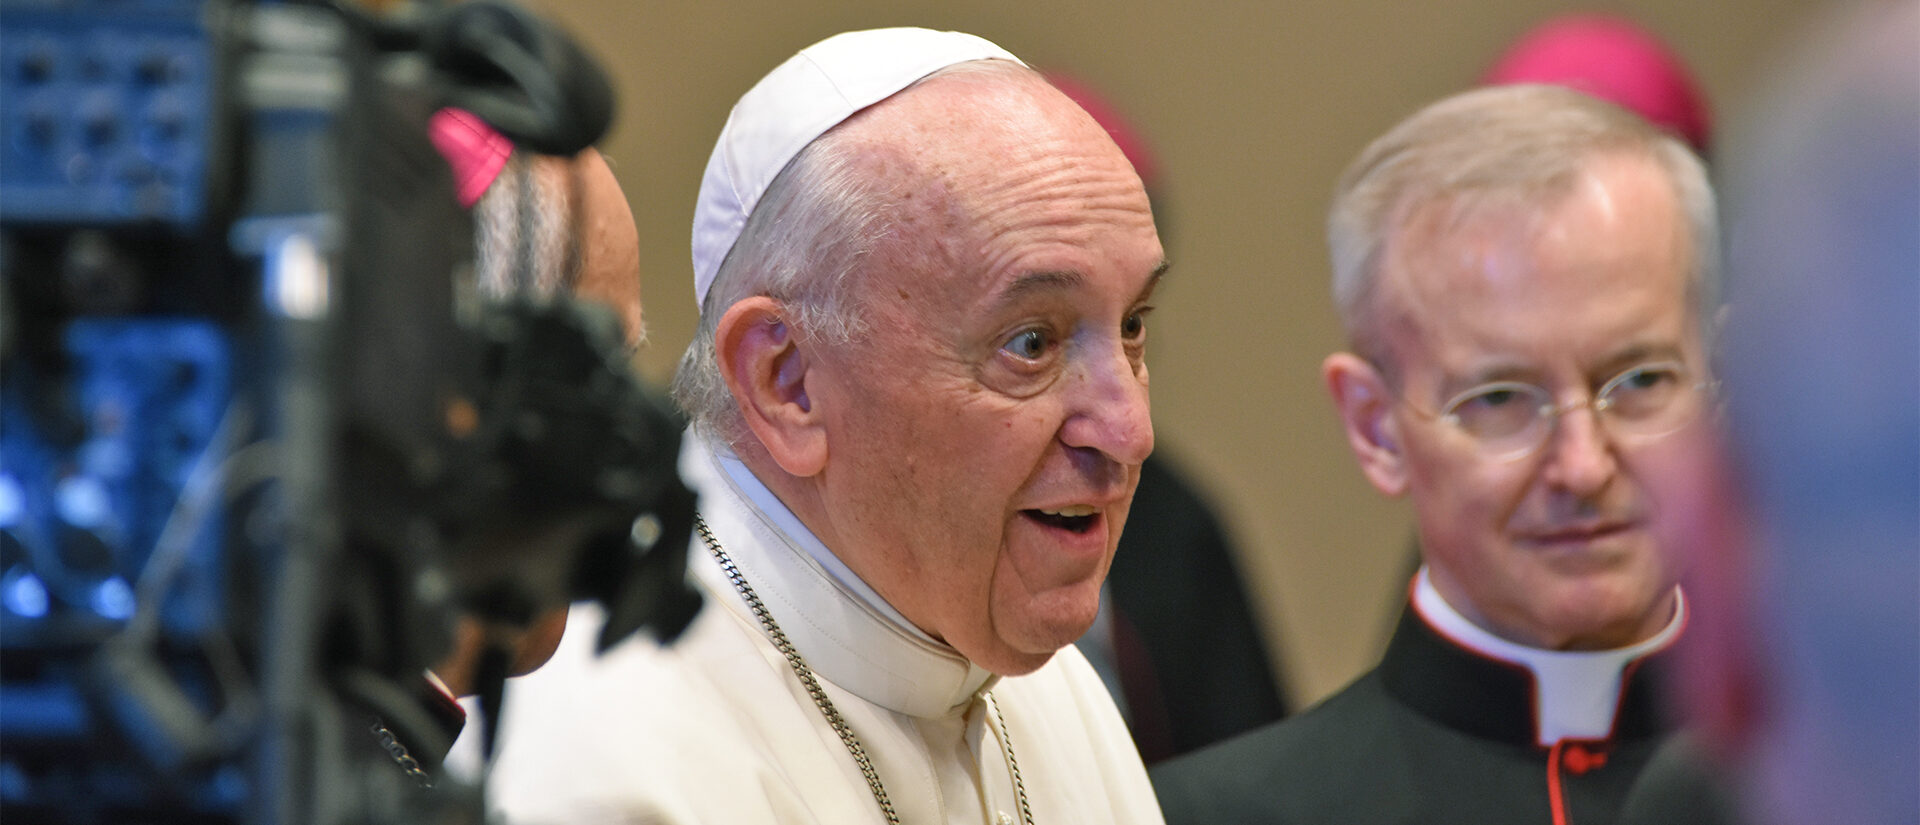 Le pape François a confirmé ne pas avoir de grave problème de santé | © Grégory Roth